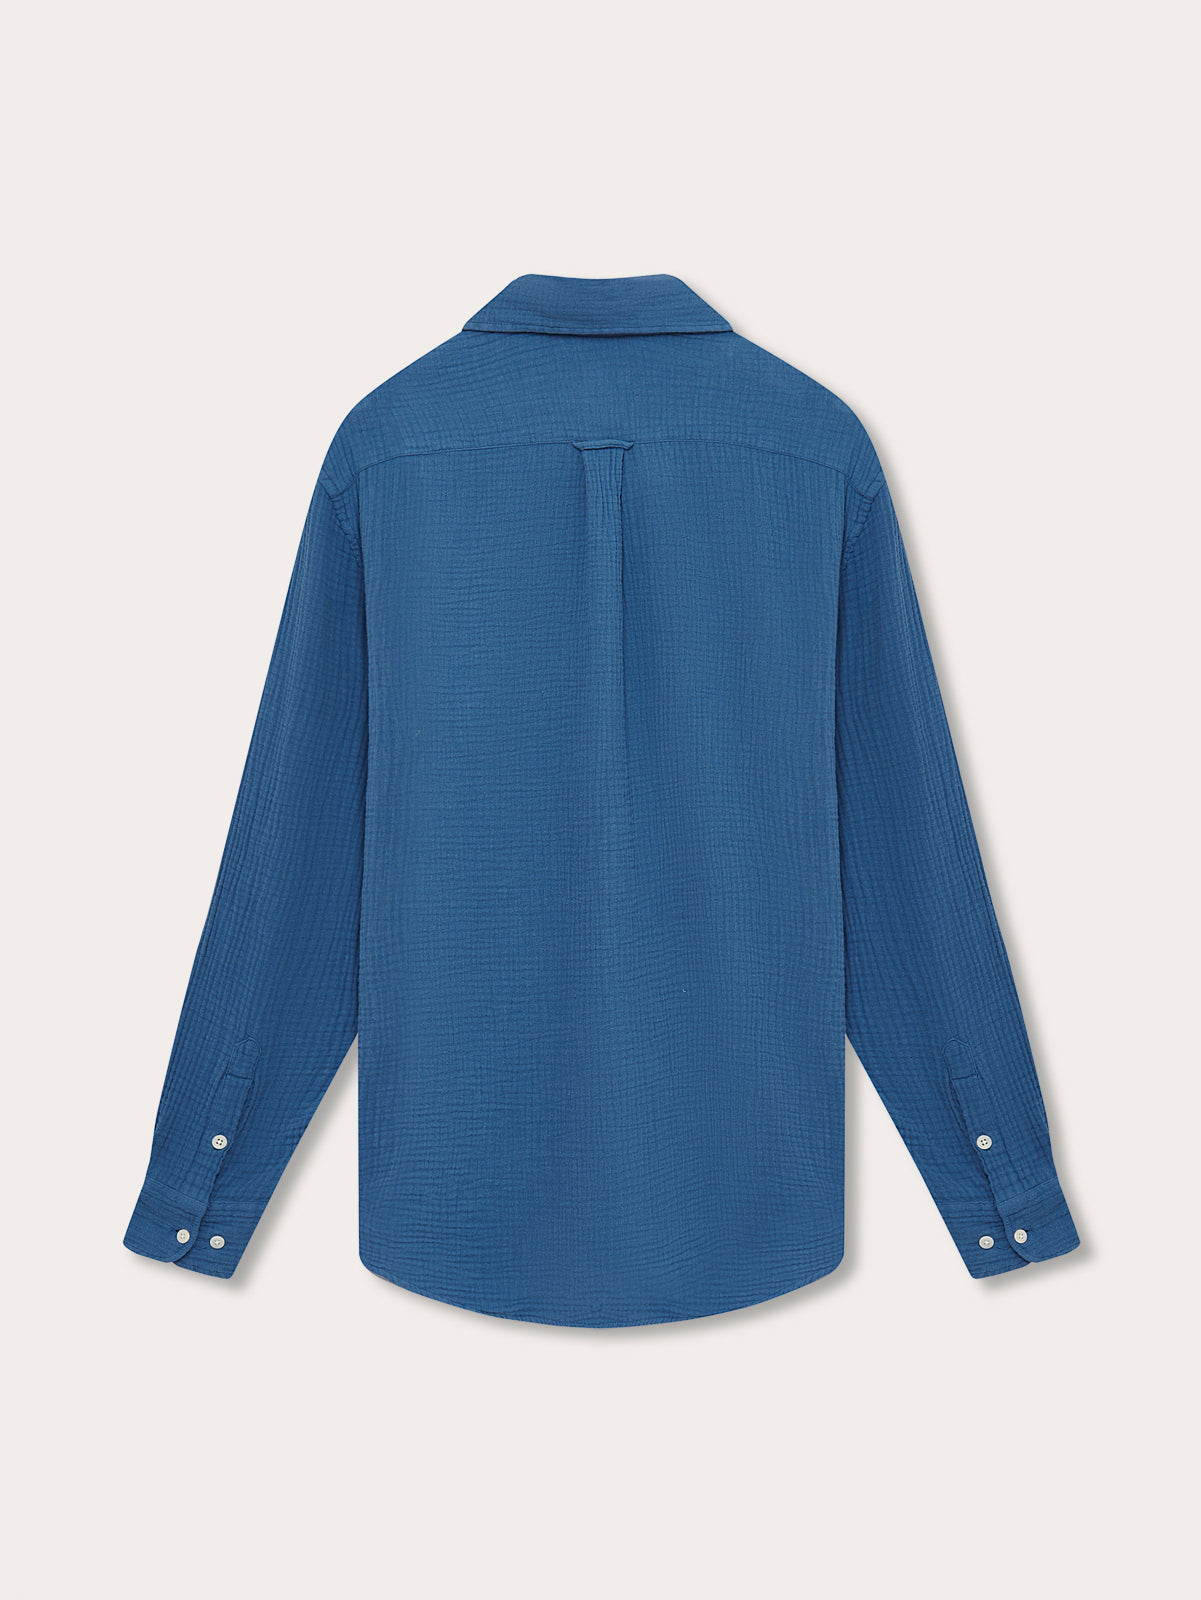 Men's Deep Blue Galliot Cotton Shirt